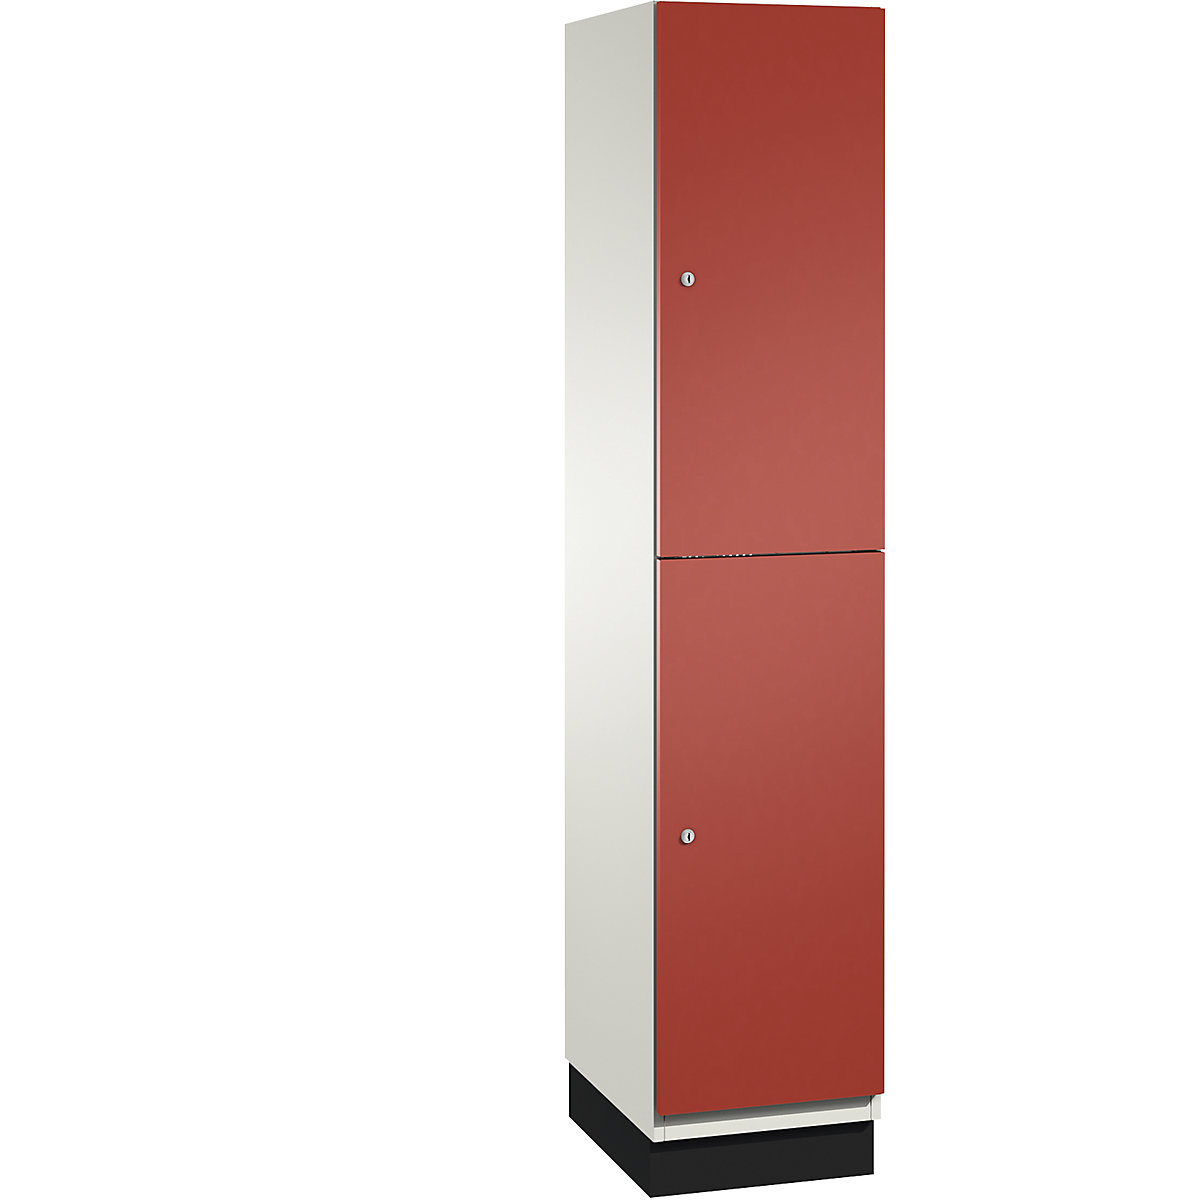 C+P – Skříň s boxy CAMBIO s tyčí na oděvy, 2 boxy, korpus čistý bílý / dveře ohnivě červené, šířka 400 mm